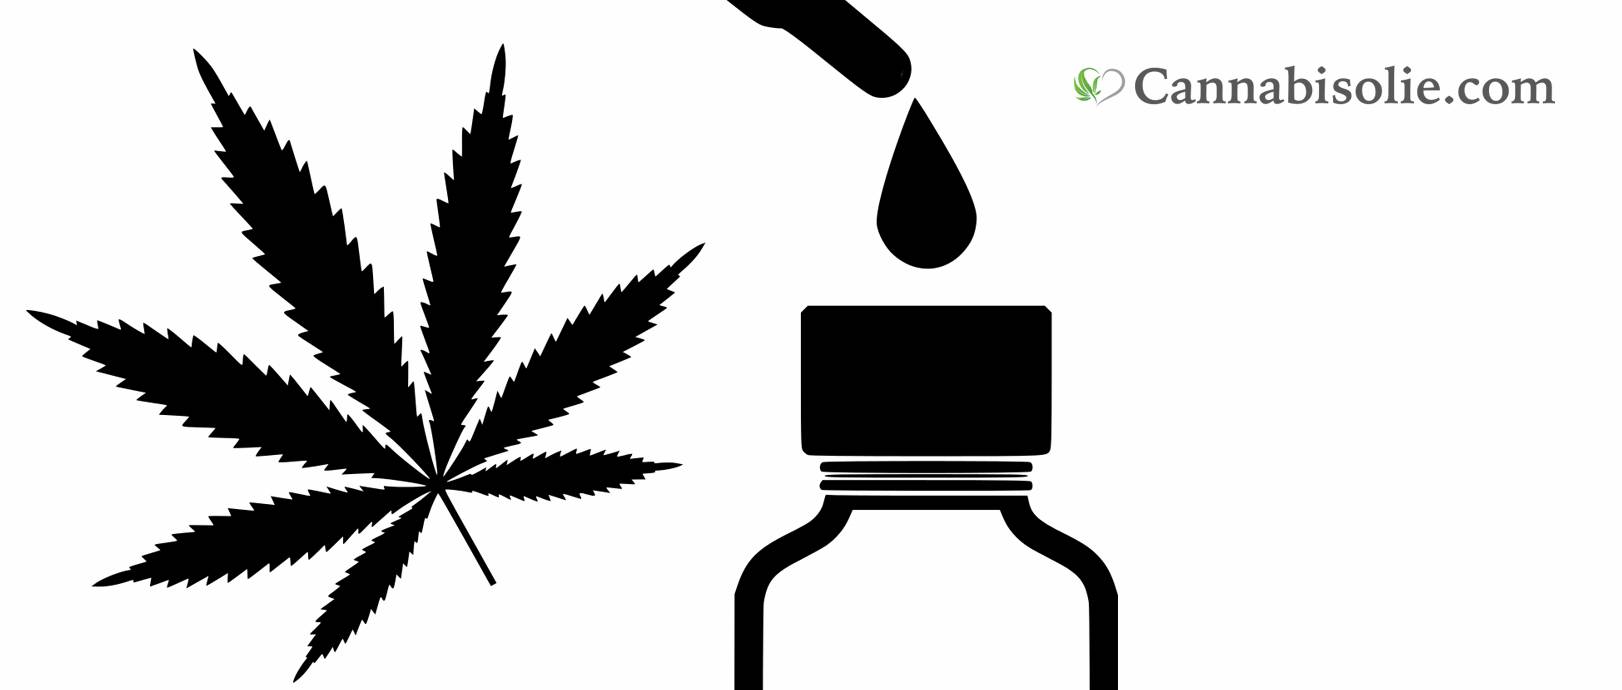 Cannabisolie kopen met THC? Lees eerst deze informatie?